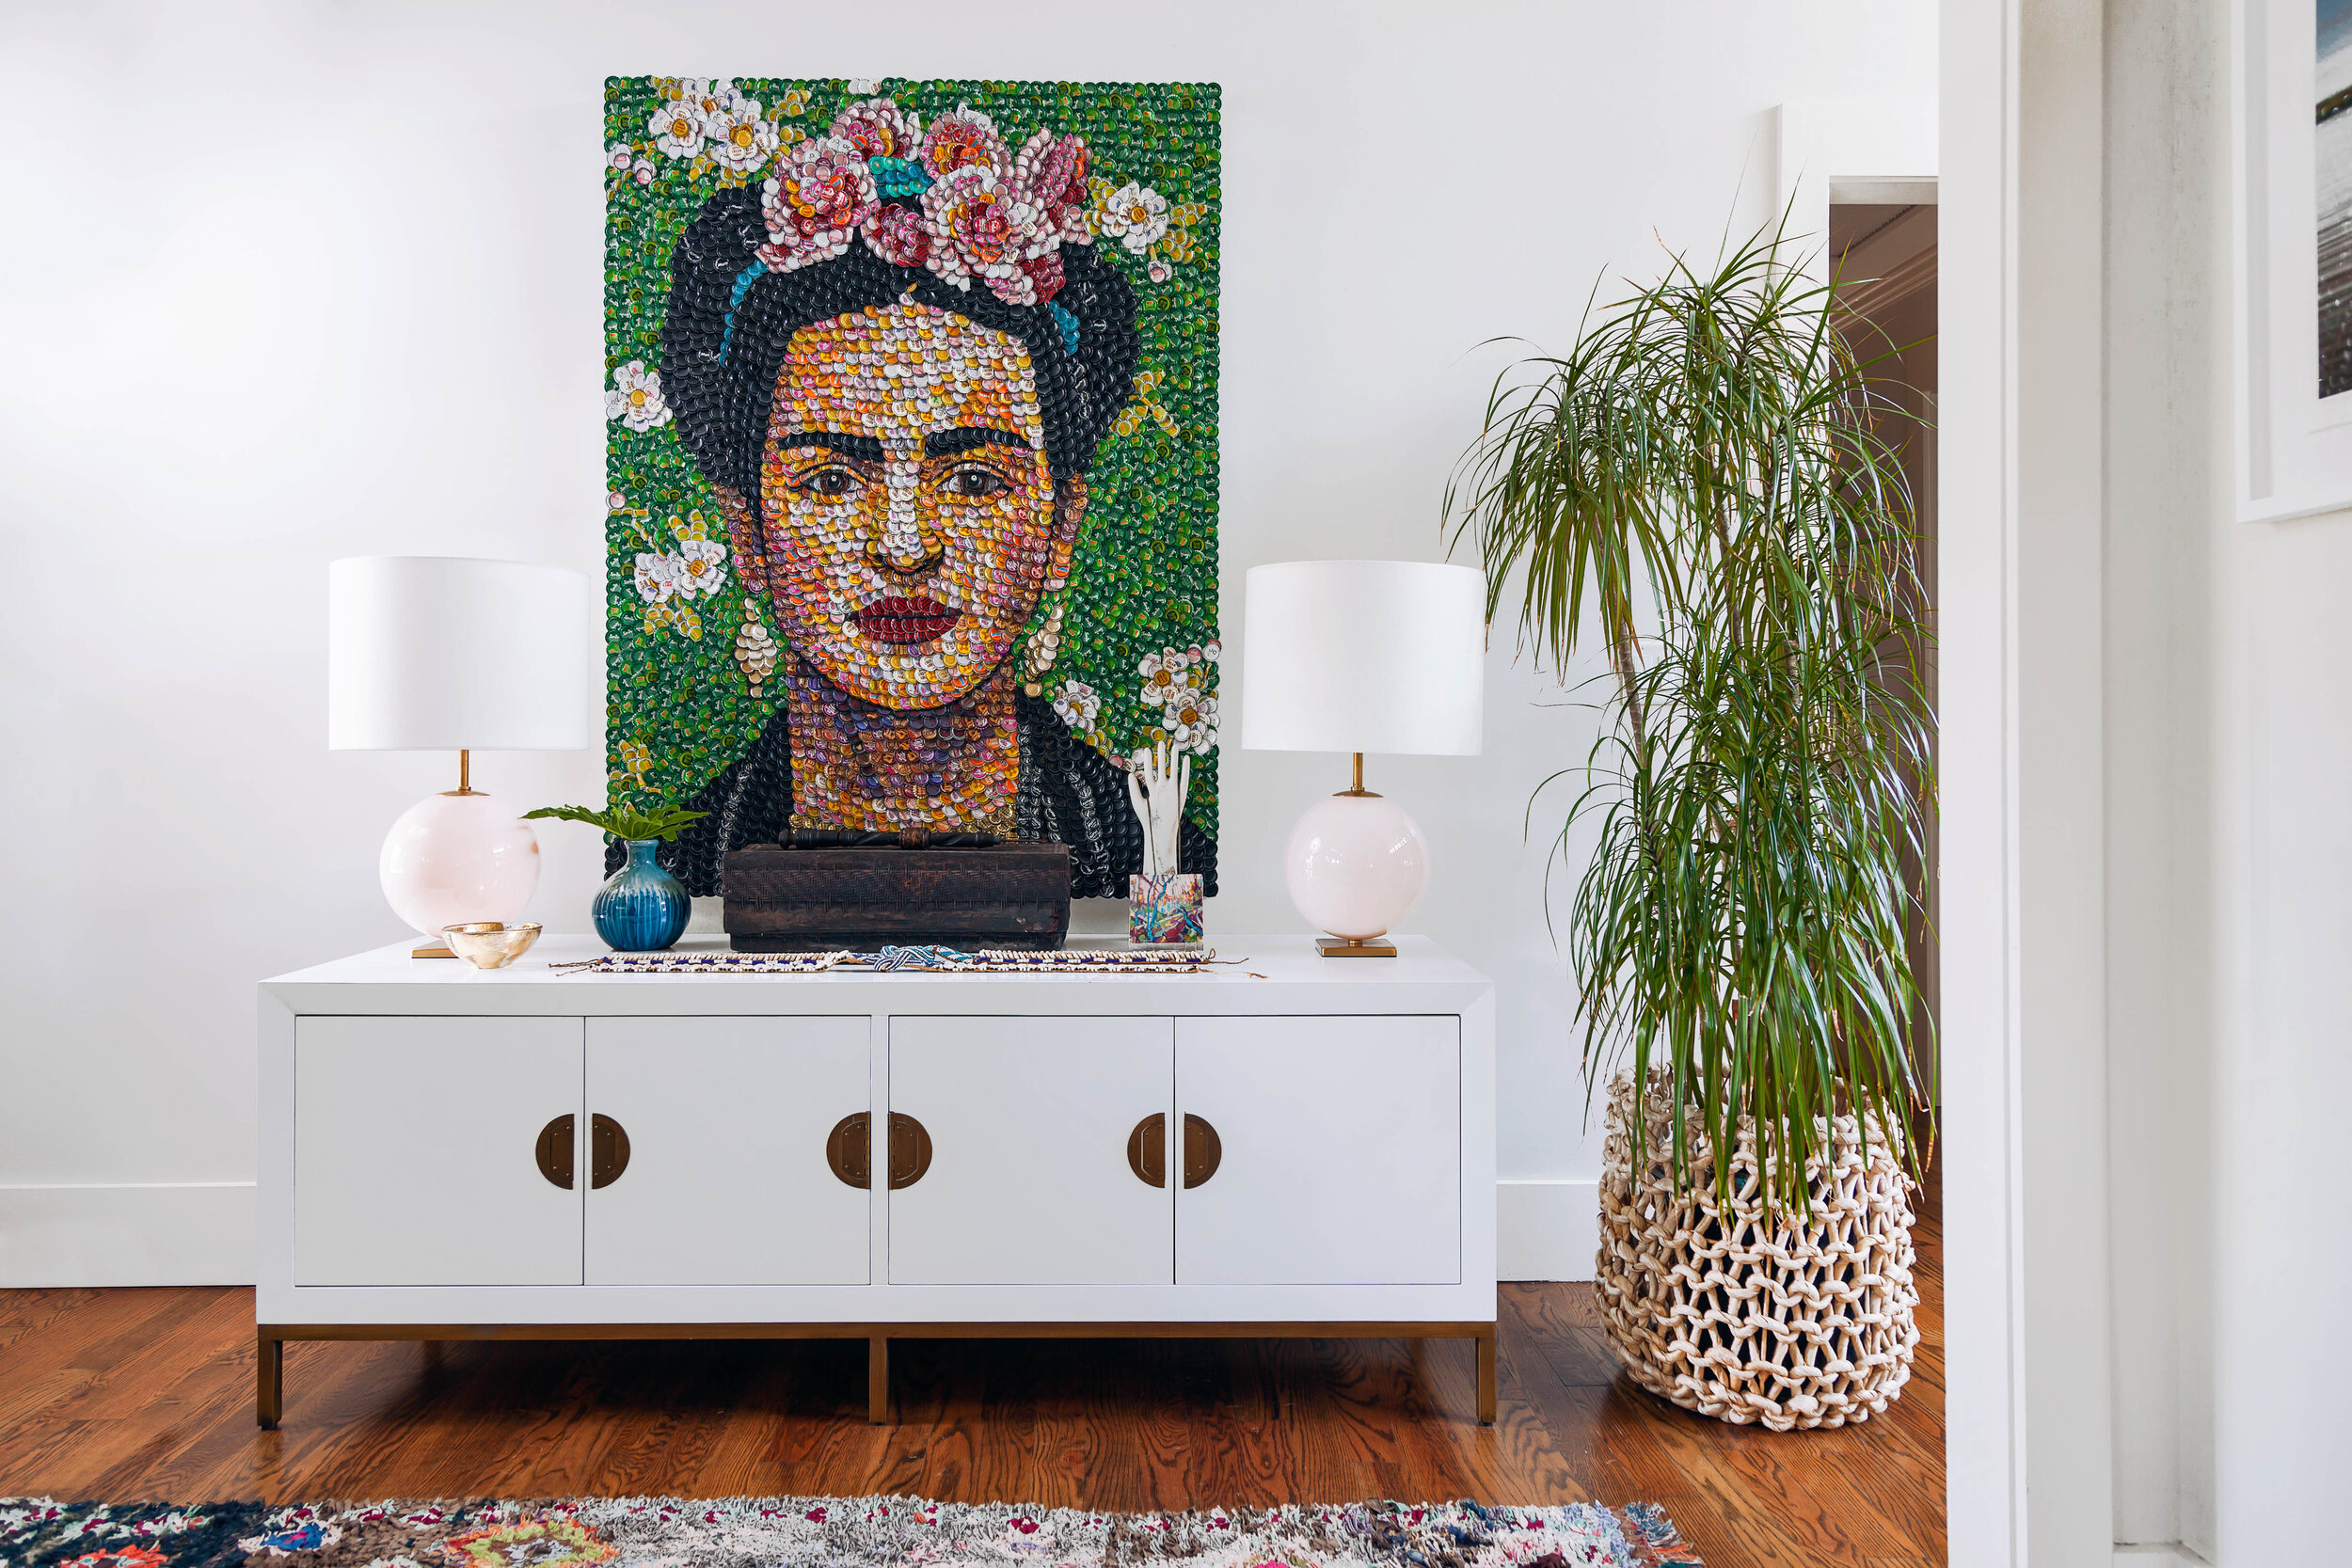 Frida-kahlo-bottle-cap-portrait-molly-b-right-artist